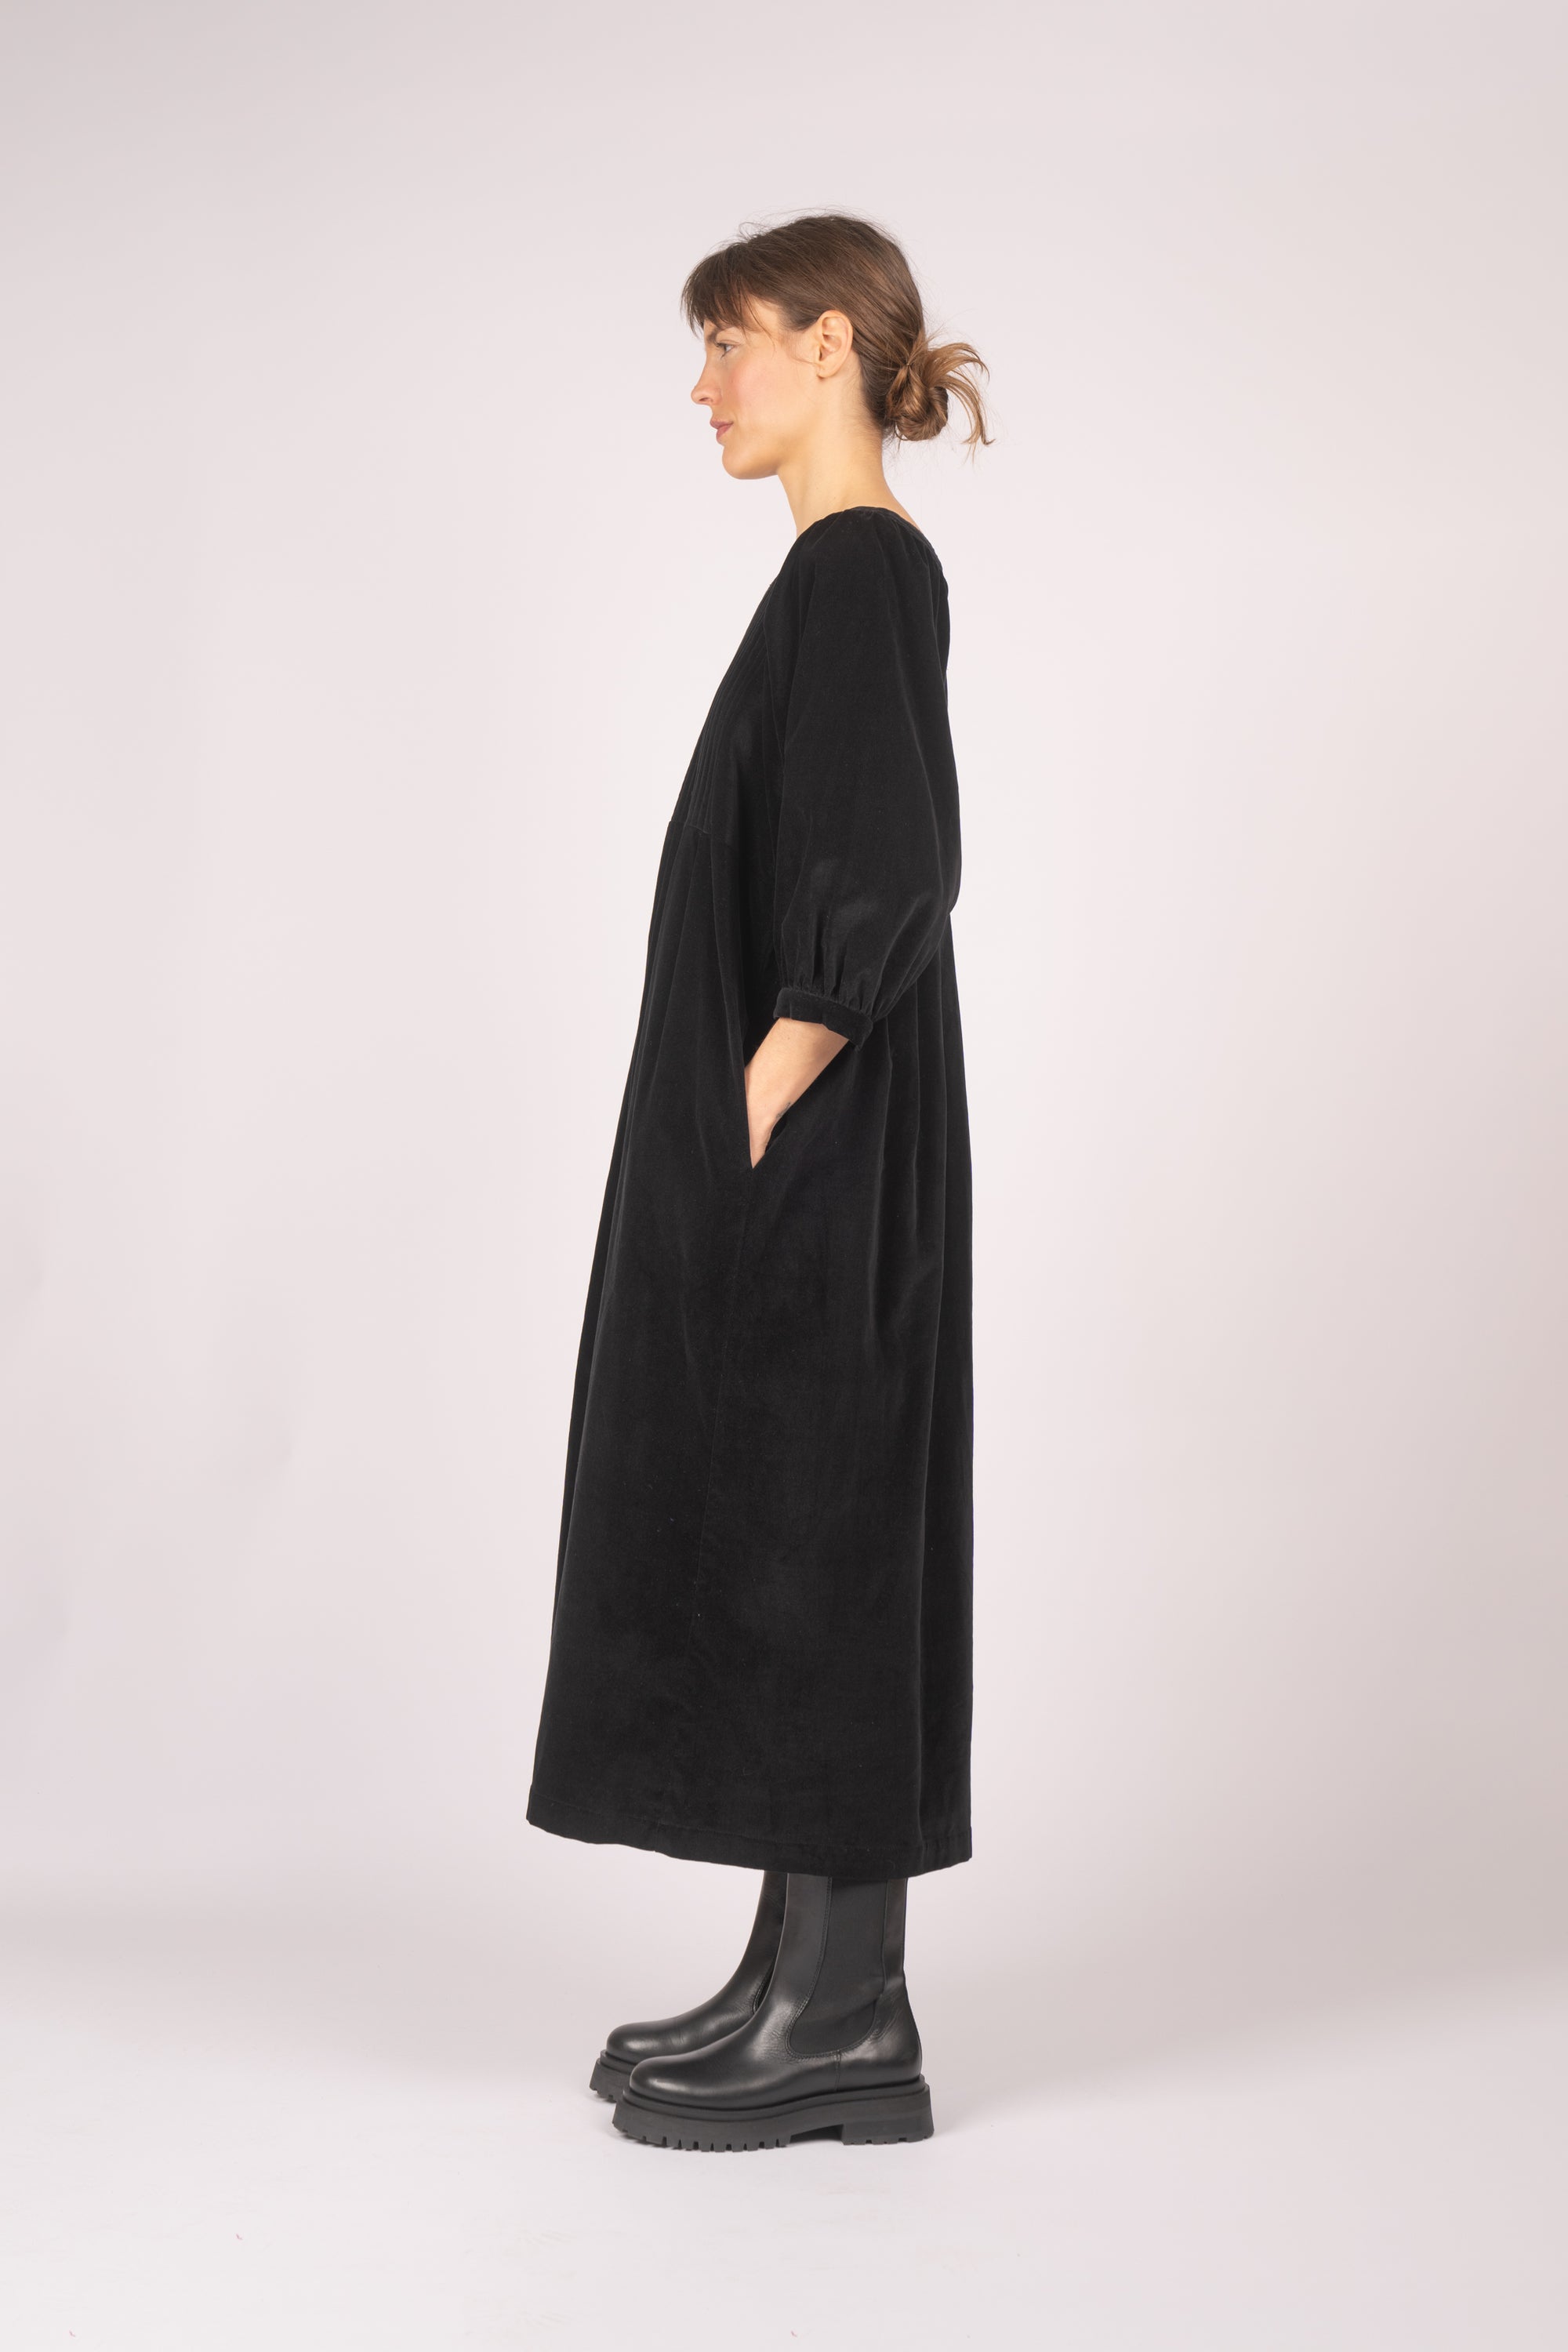 model wears black velvet quilt dress from fashion brand THE REGULAR